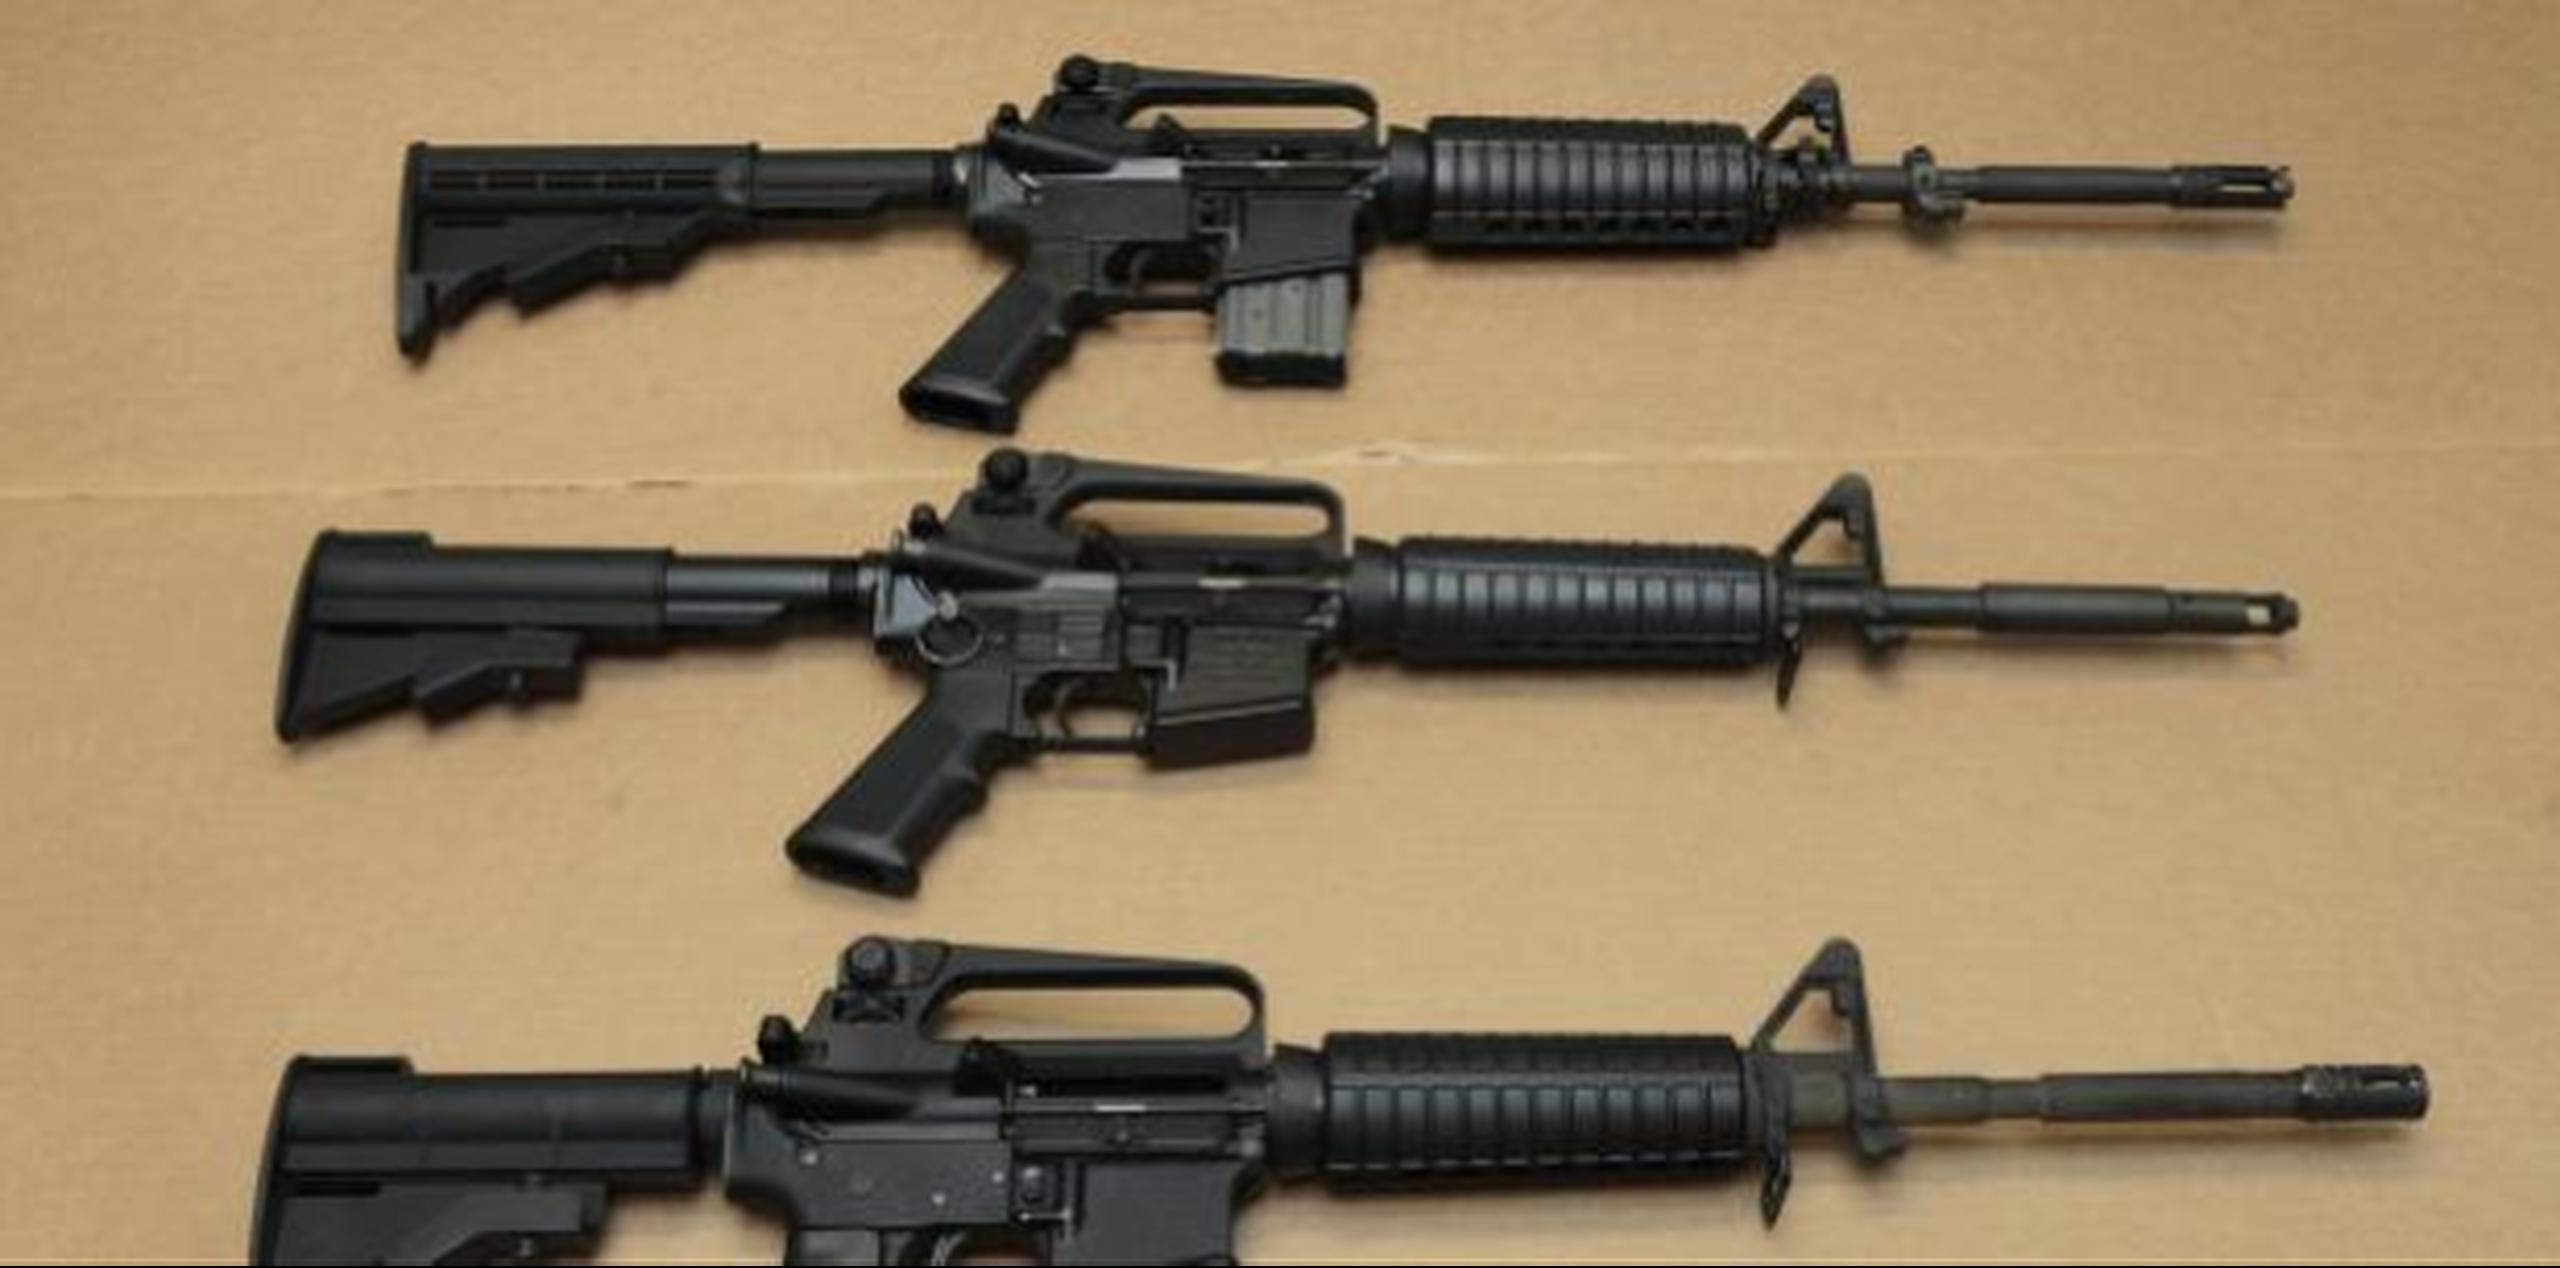 El acceso a armas, incluyendo rifles de asalto, es sumamente fácil en muchos estados. (Archivo)